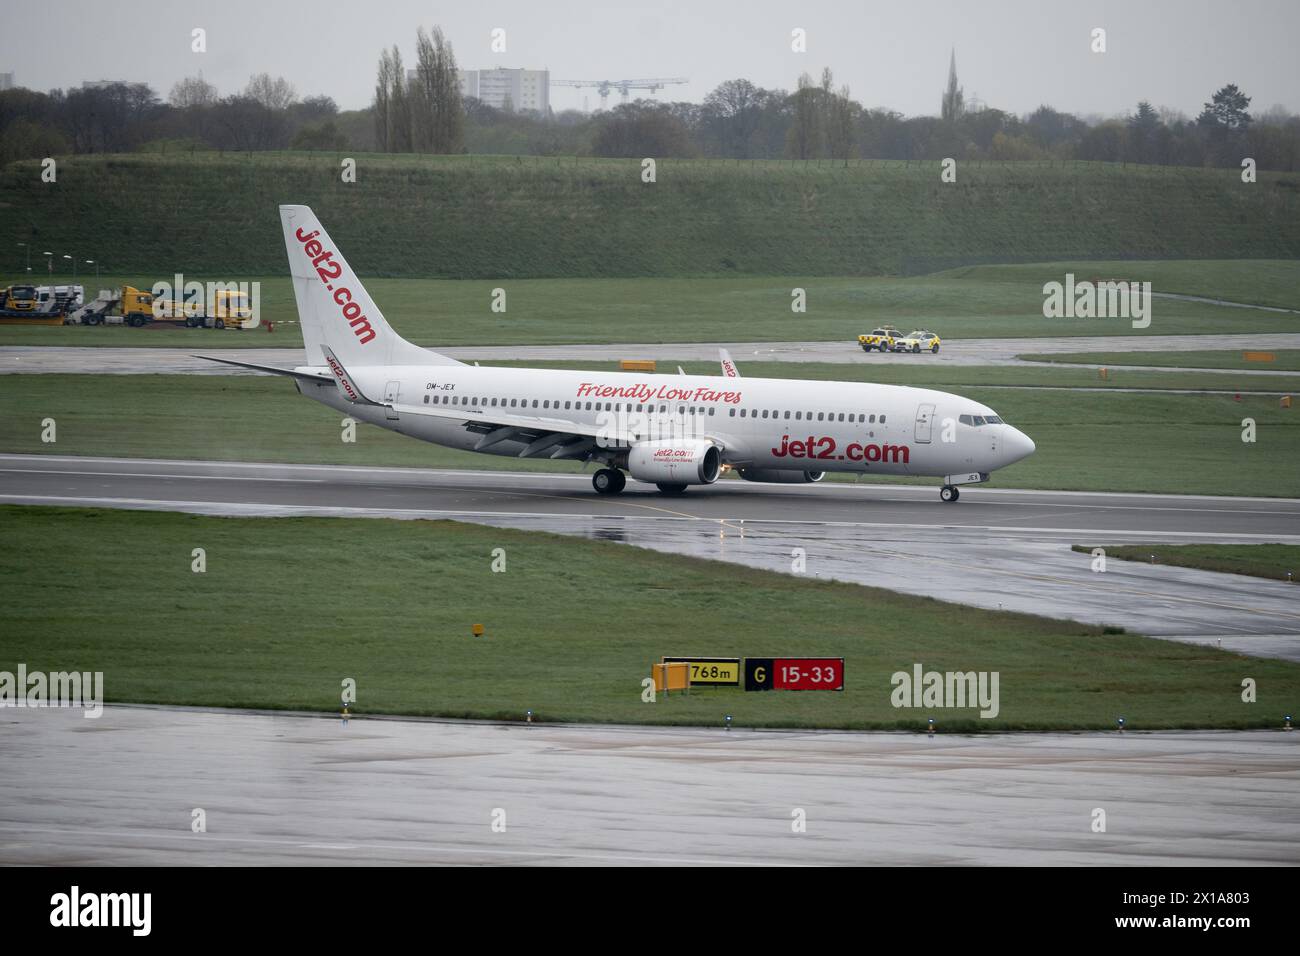 Jet2 Boeing 737-8AS landet bei nassem Wetter am Flughafen Birmingham, Großbritannien (OM-JEX) Stockfoto